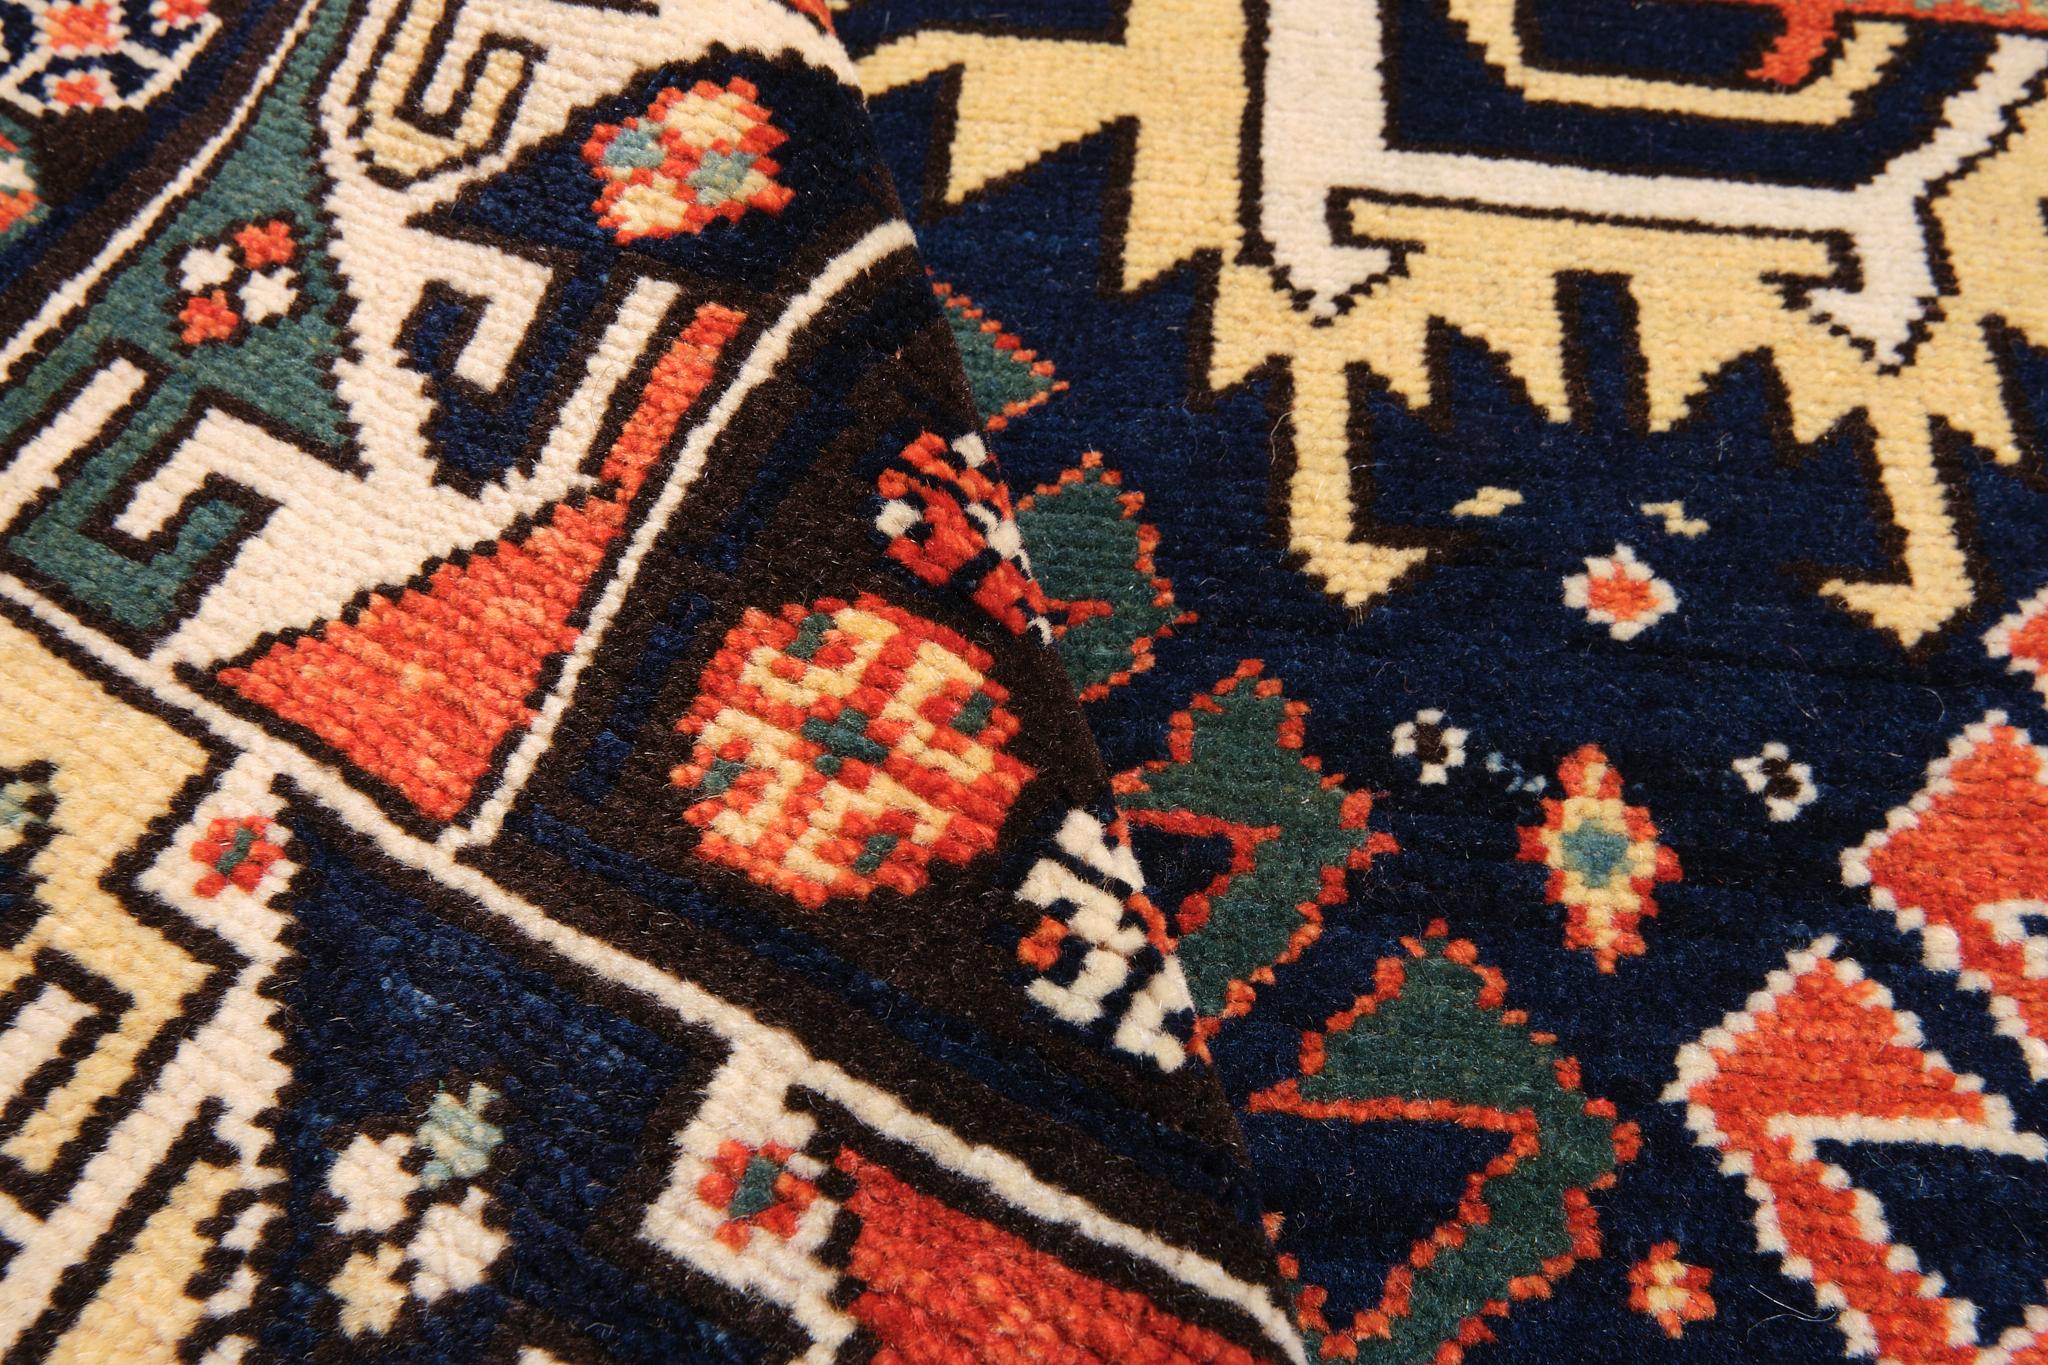 Wool Ararat Rugs Derbend Kazak Rug, 19th C. Caucasian Revival Carpet Natural Dyed For Sale